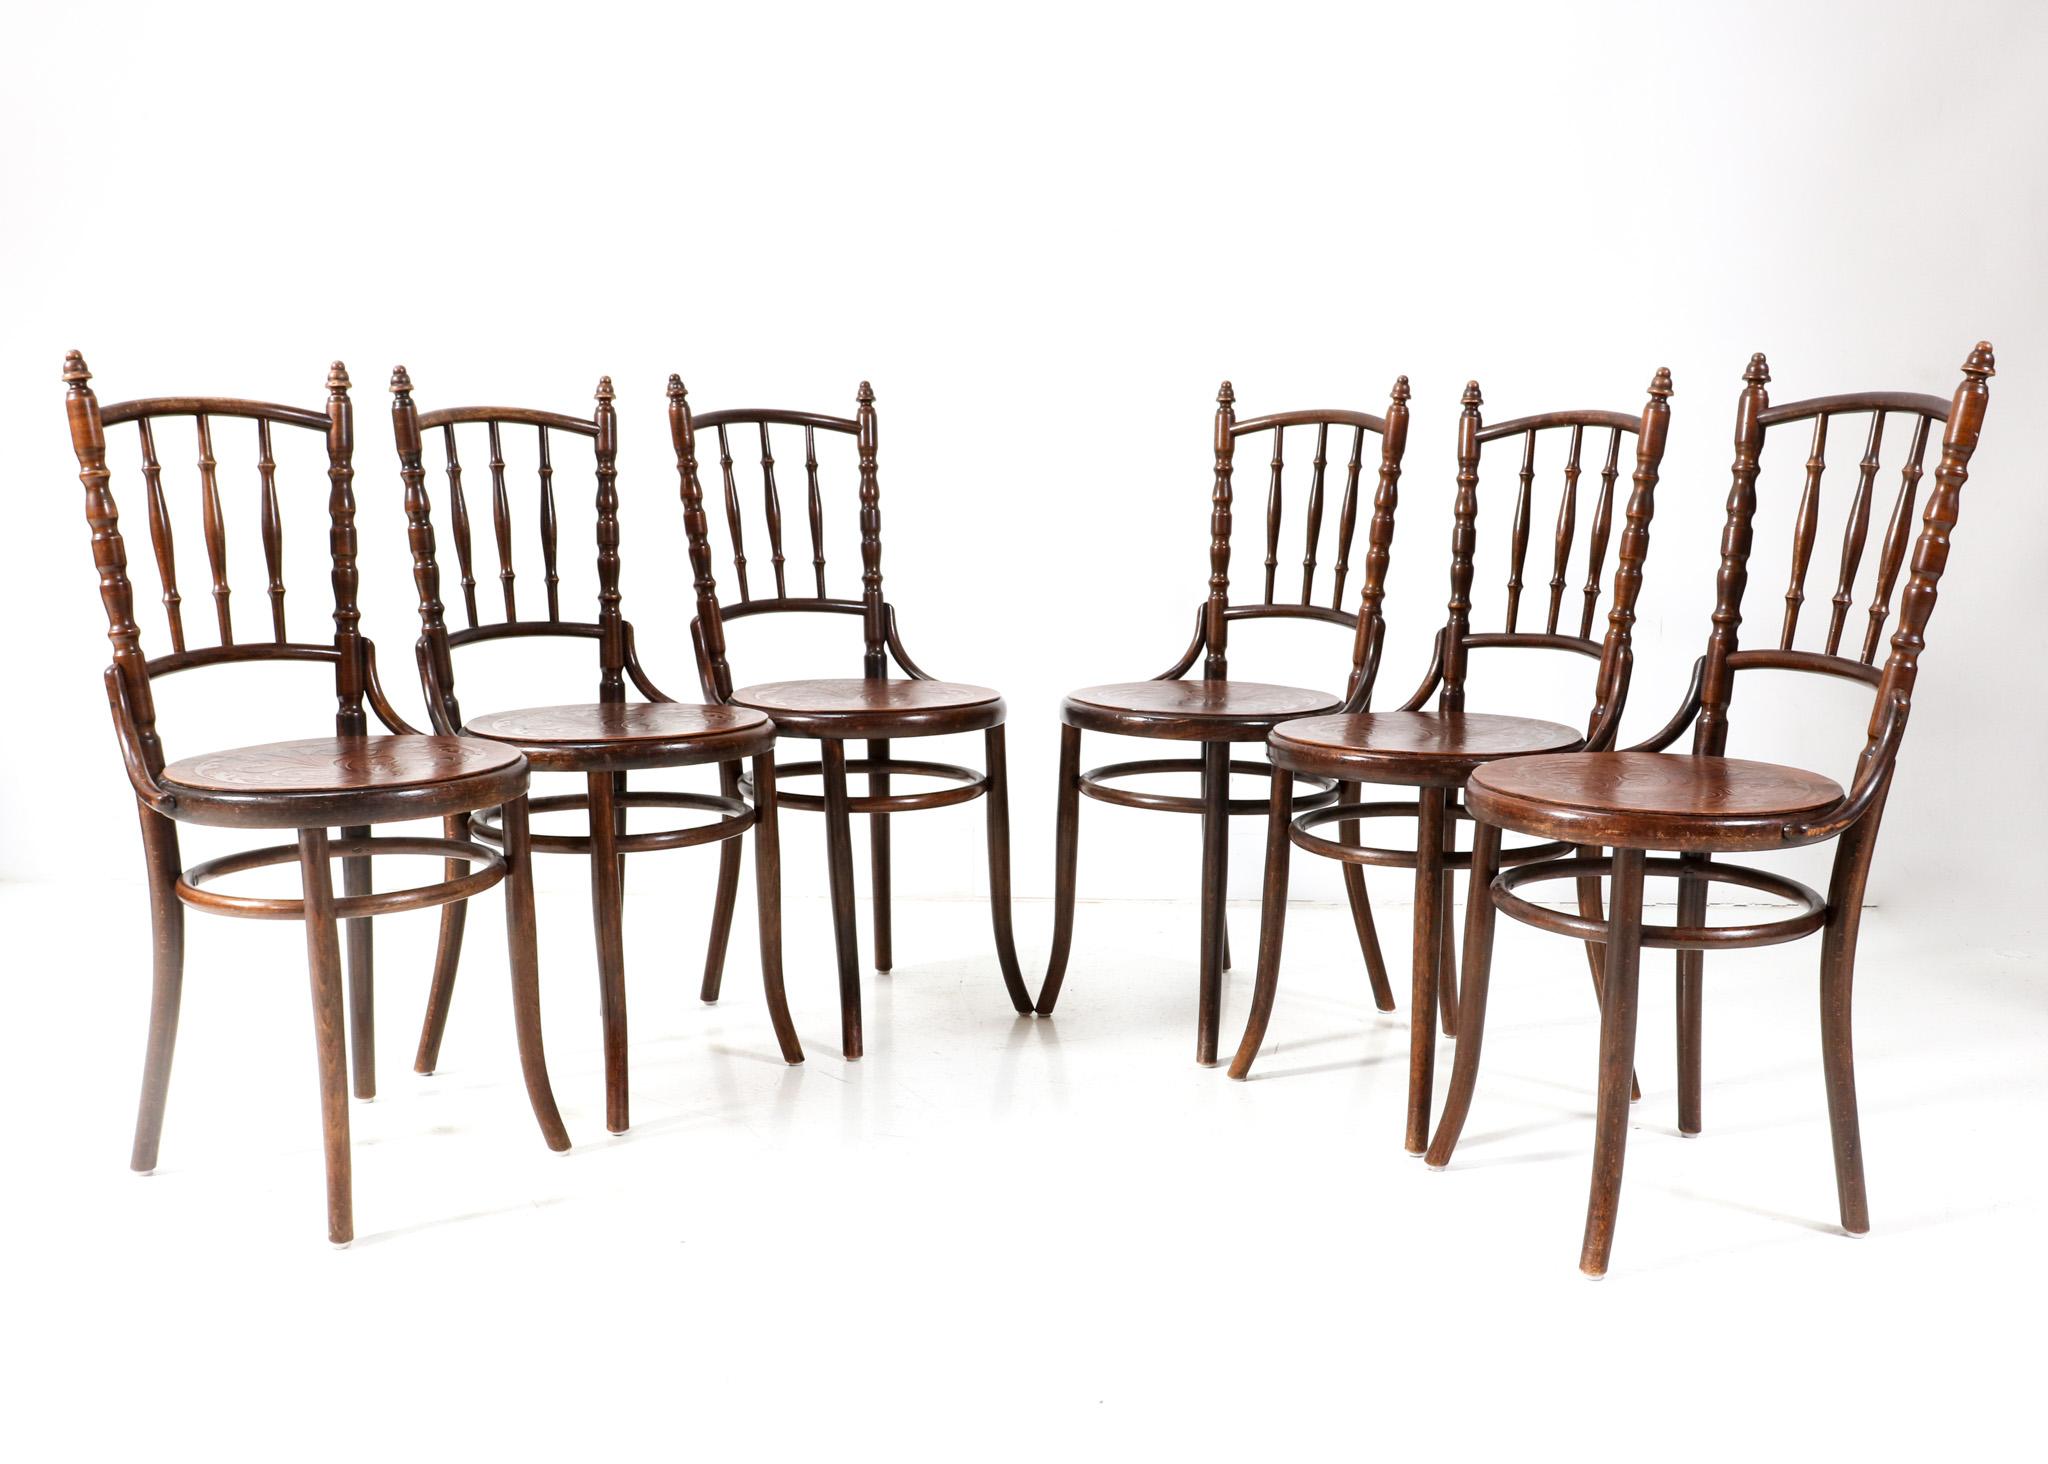 Ensemble de six chaises de bistro Art Nouveau.
Design/One.
Un design autrichien saisissant des années 1900.
Châssis en hêtre massif et en bois courbé avec sièges en bois imprimé d'origine.
Ce magnifique ensemble de six chaises de bistro Art nouveau